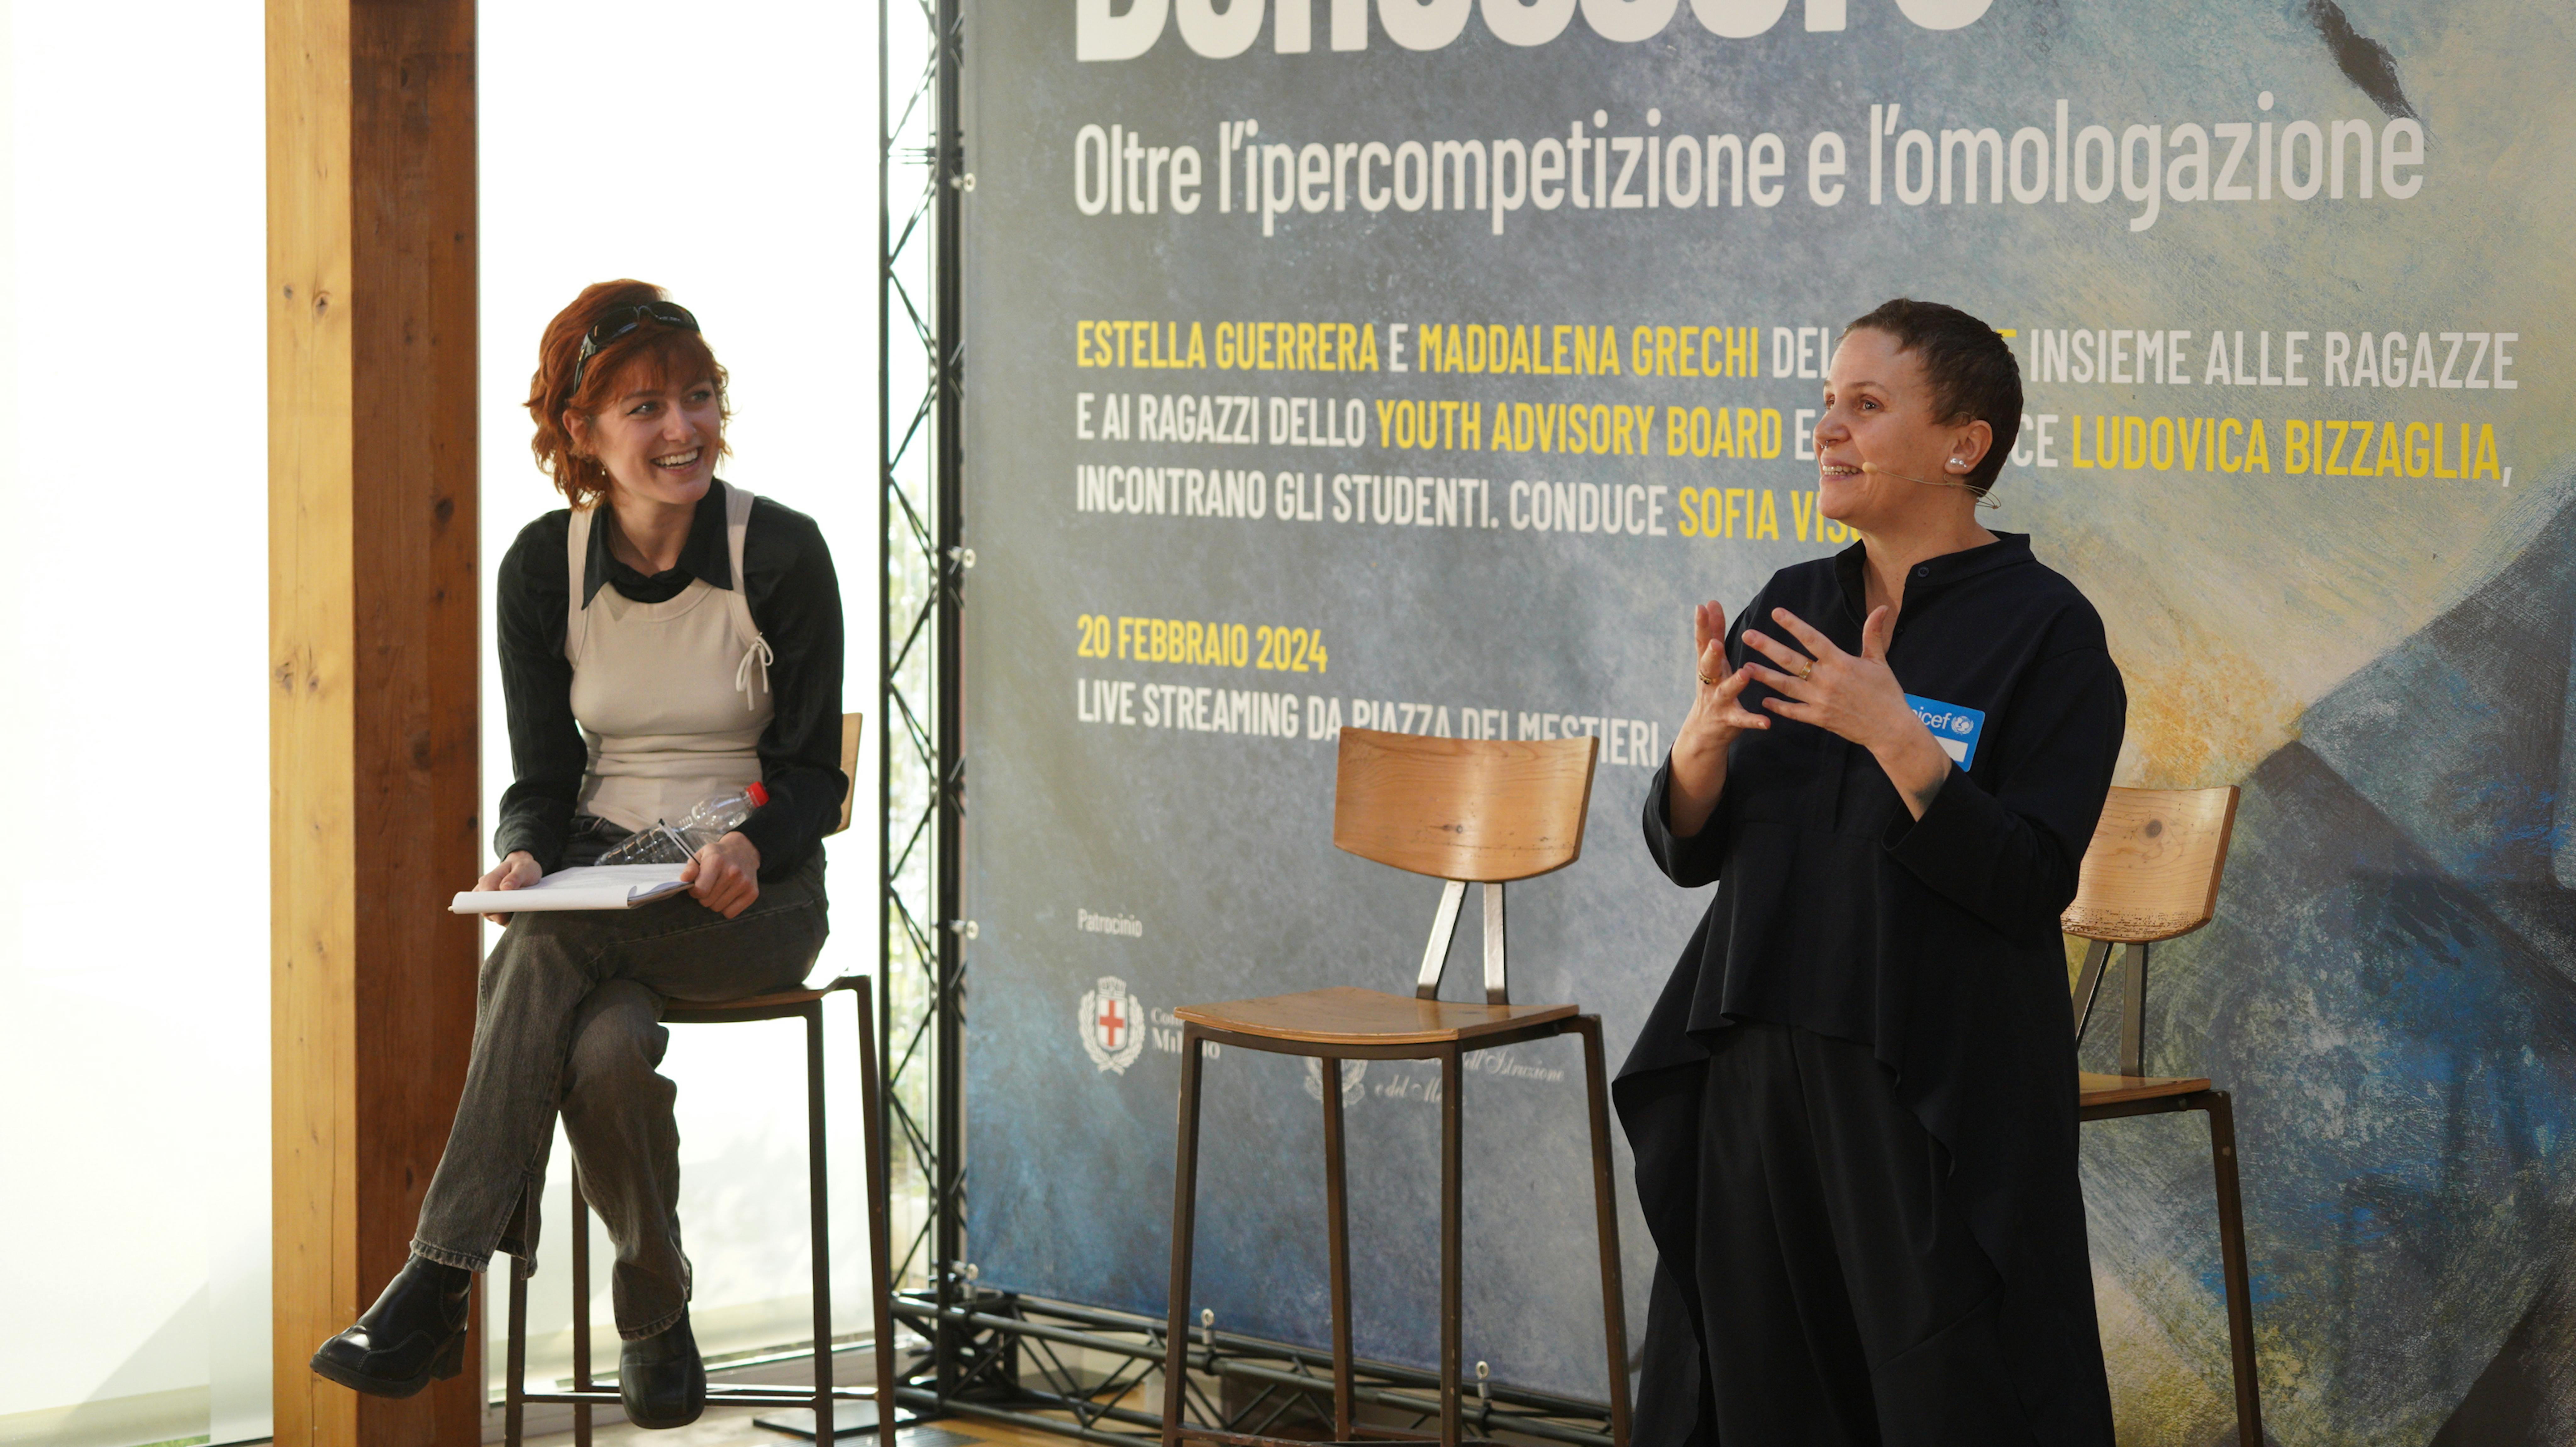 Milano - L'intervento di  Estella Guerrera, psicologa psicoterapeuta, esperta dell’UNICEF in salute mentale e supporto psicosociale,di Estella Guerrera durante il convegno